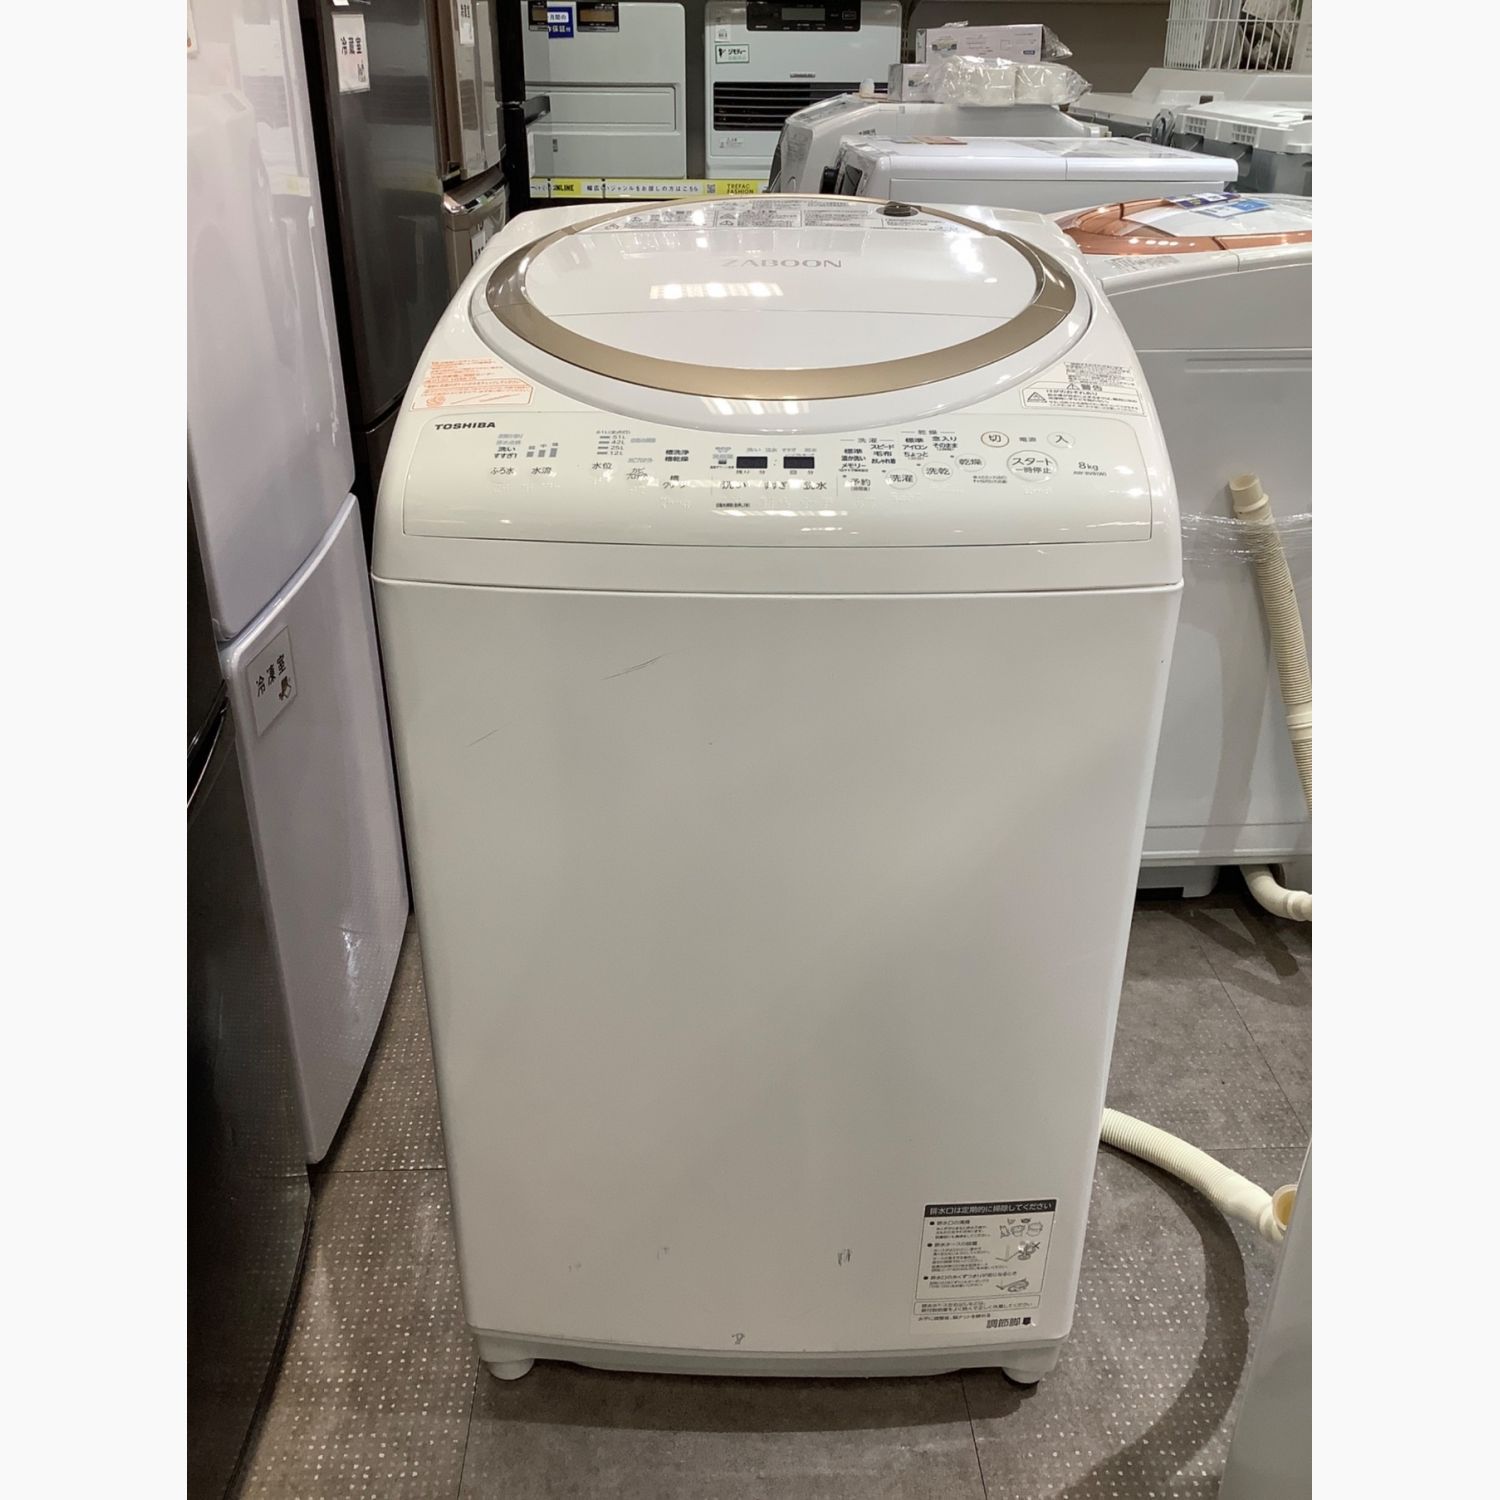 TOSHIBA (トウシバ) 縦型洗濯乾燥機 ヨゴレ大 8.0kg 4.5kg AW-8V8 2019